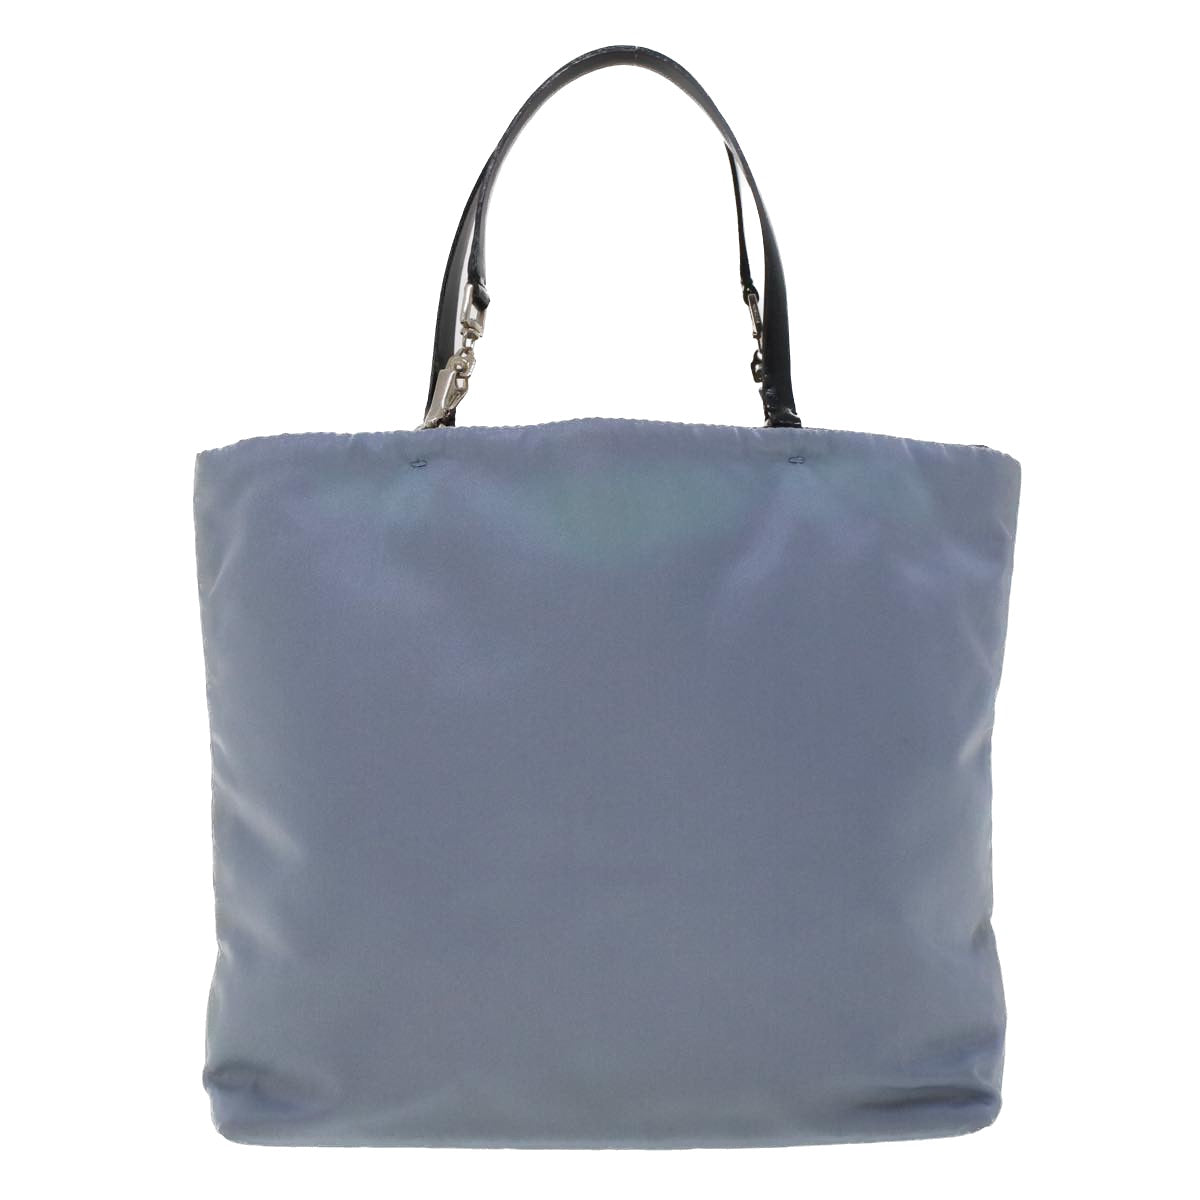 PRADA Hand Bag Nylon Light Blue Auth cl559 - 0